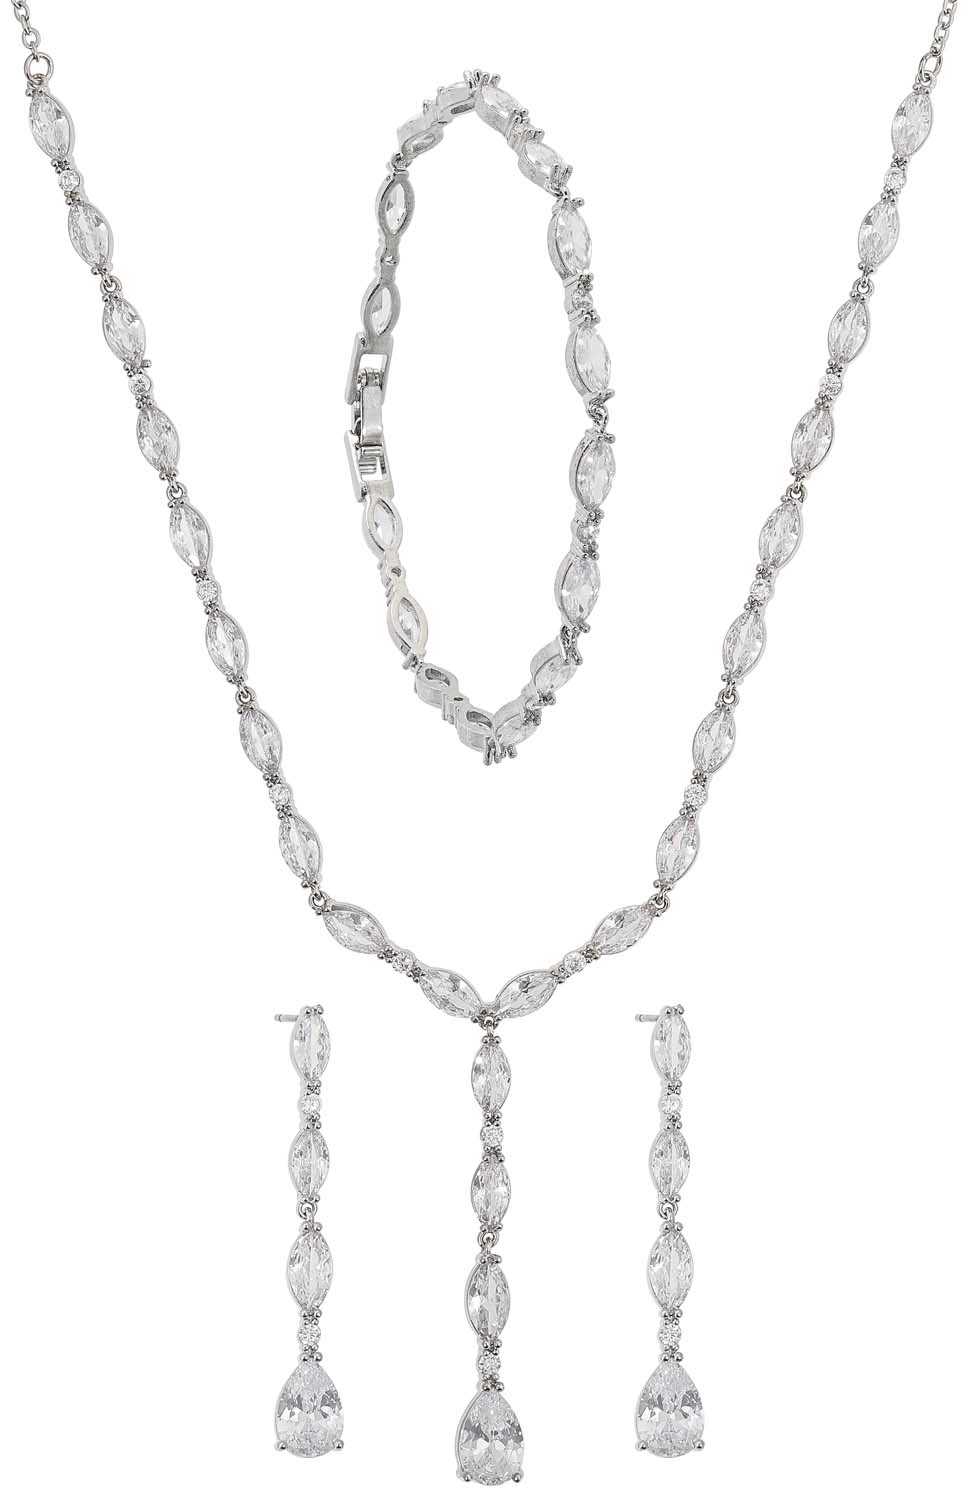 Rabatt 54 % NoName Graue Quaste Halskette mit Perlen DAMEN Accessoires Modeschmuckset Grau Grau/Silber Einheitlich 